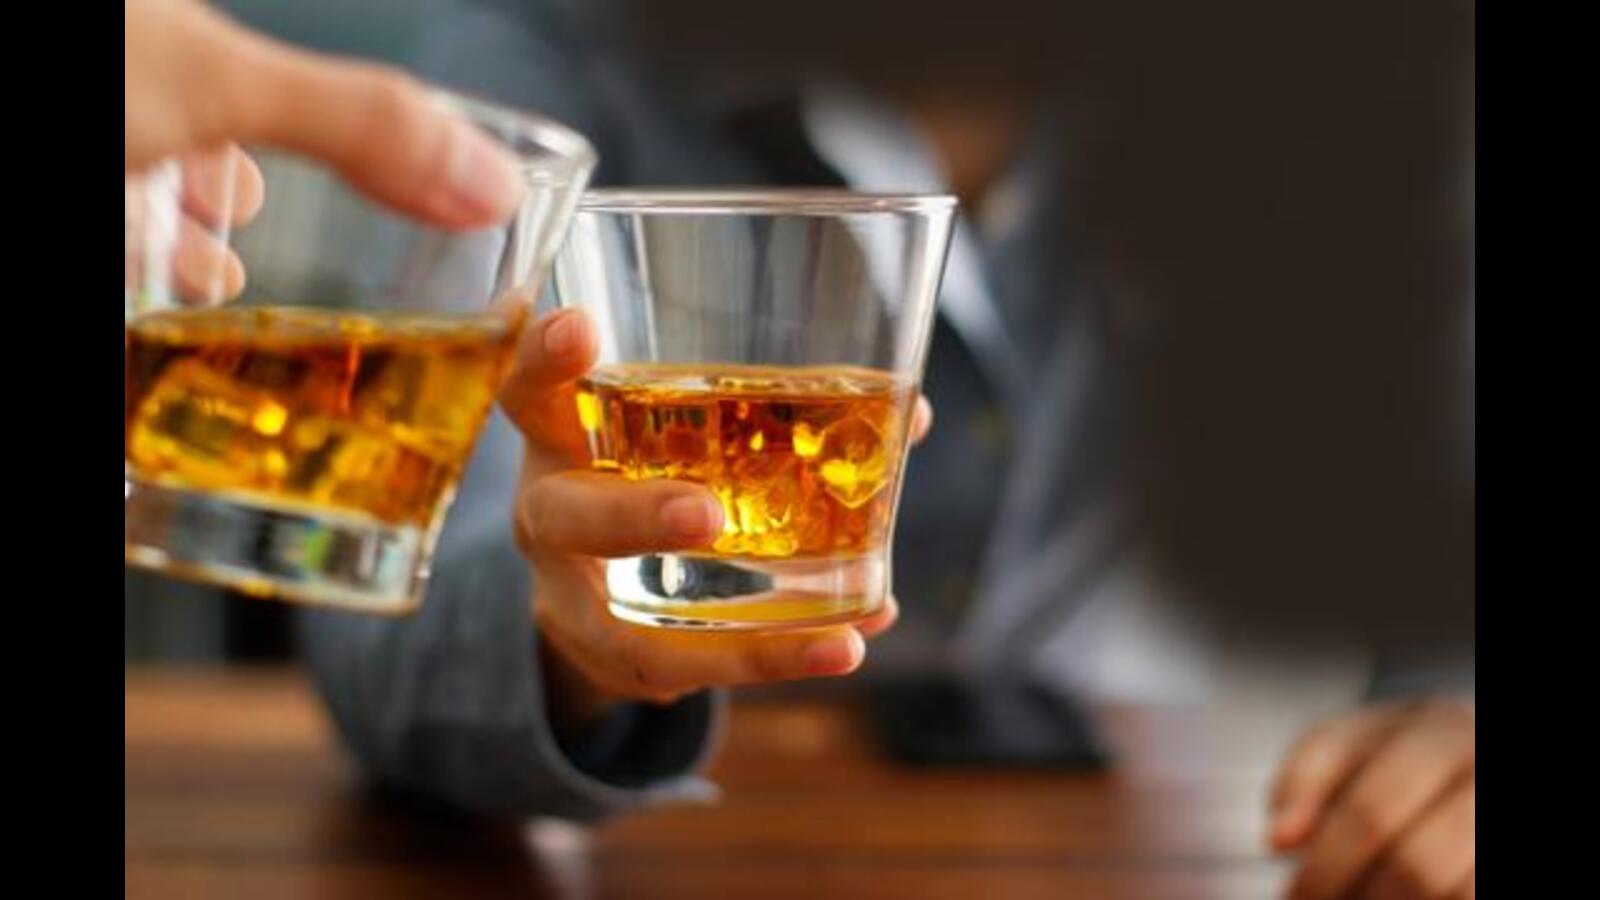 पुणे में पिछले साल की तुलना में शराब की खपत में 40% की वृद्धि हुई है